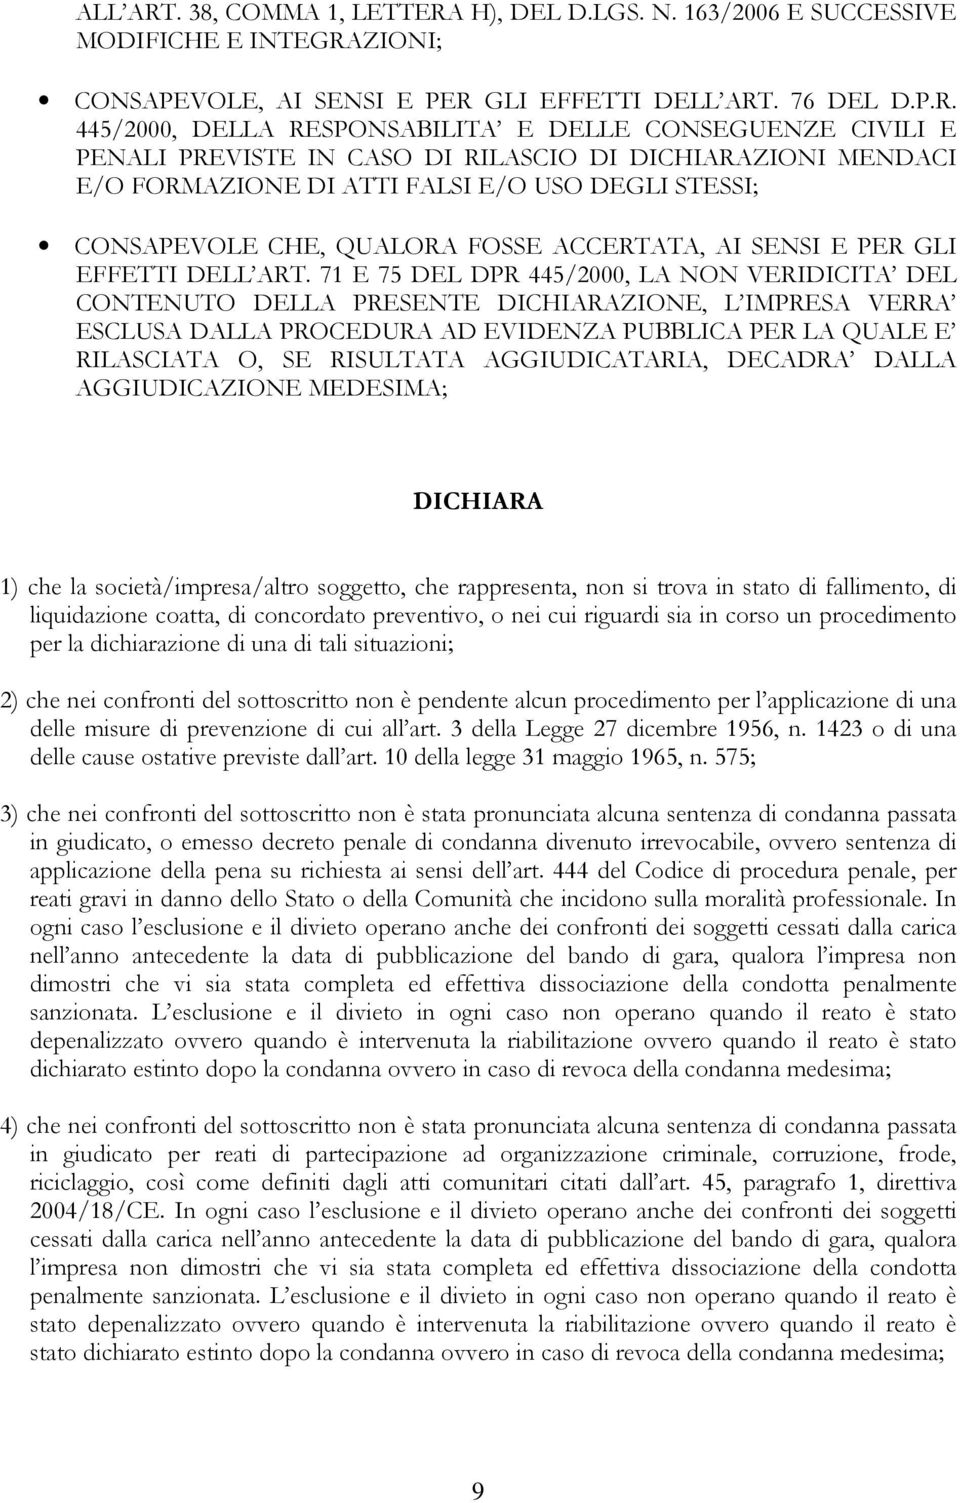 H), DEL D.LGS. N. 163/2006 E SUCCESSIVE MODIFICHE E INTEGRA